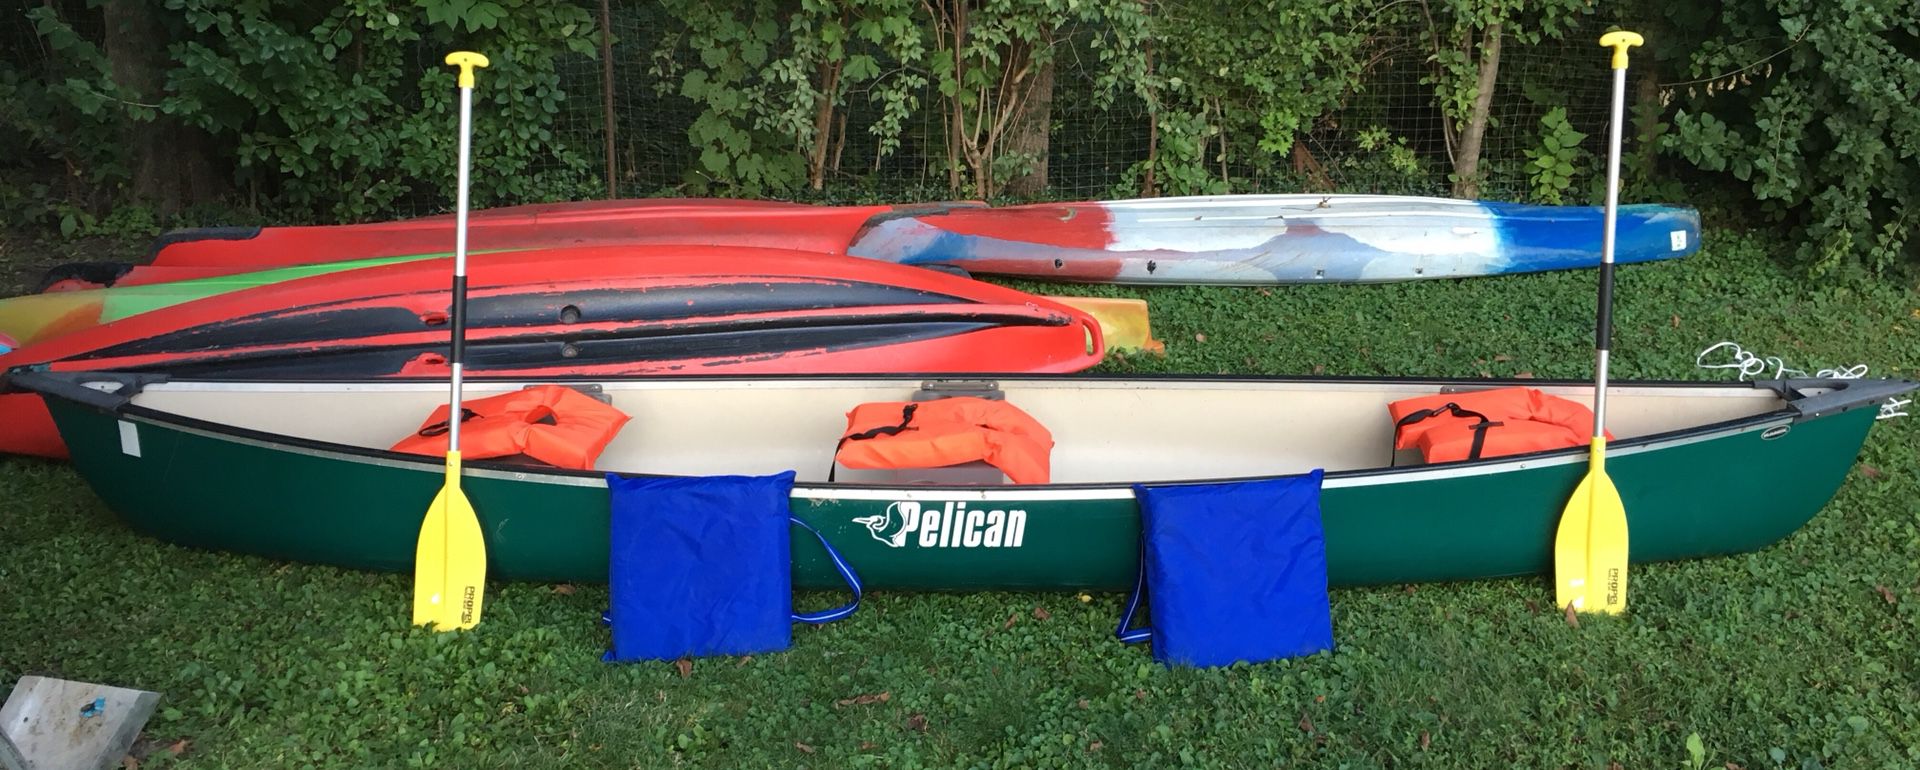 Pelican 15.5 canoe